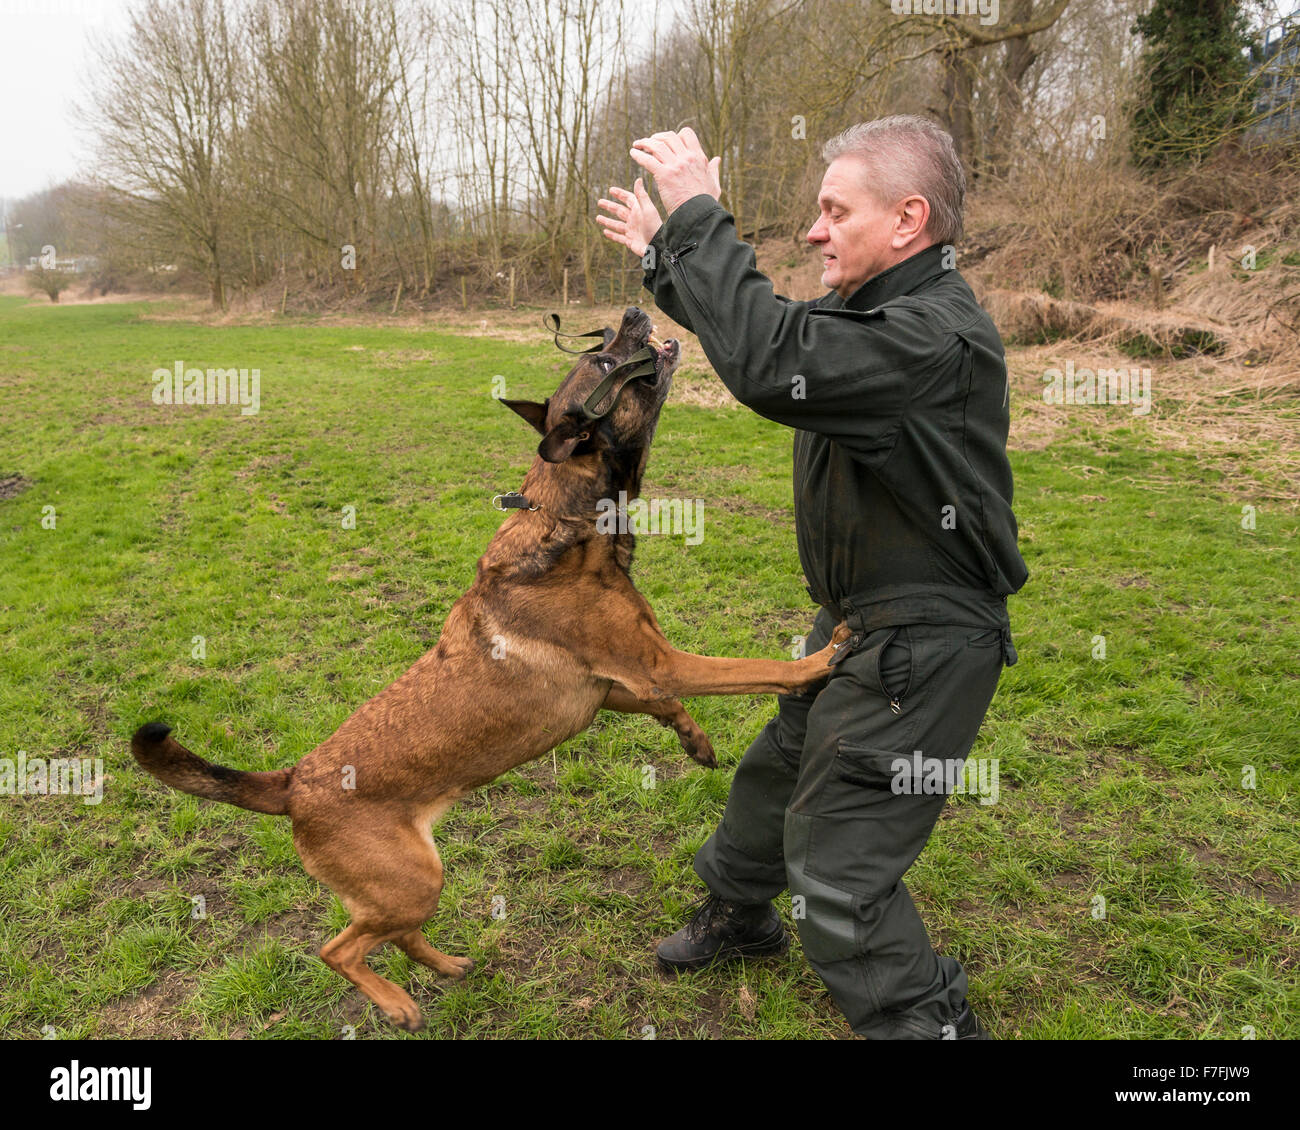 Un inspector de policía entrena a sus perros policías, un ovejero Mallinois. Foto de stock